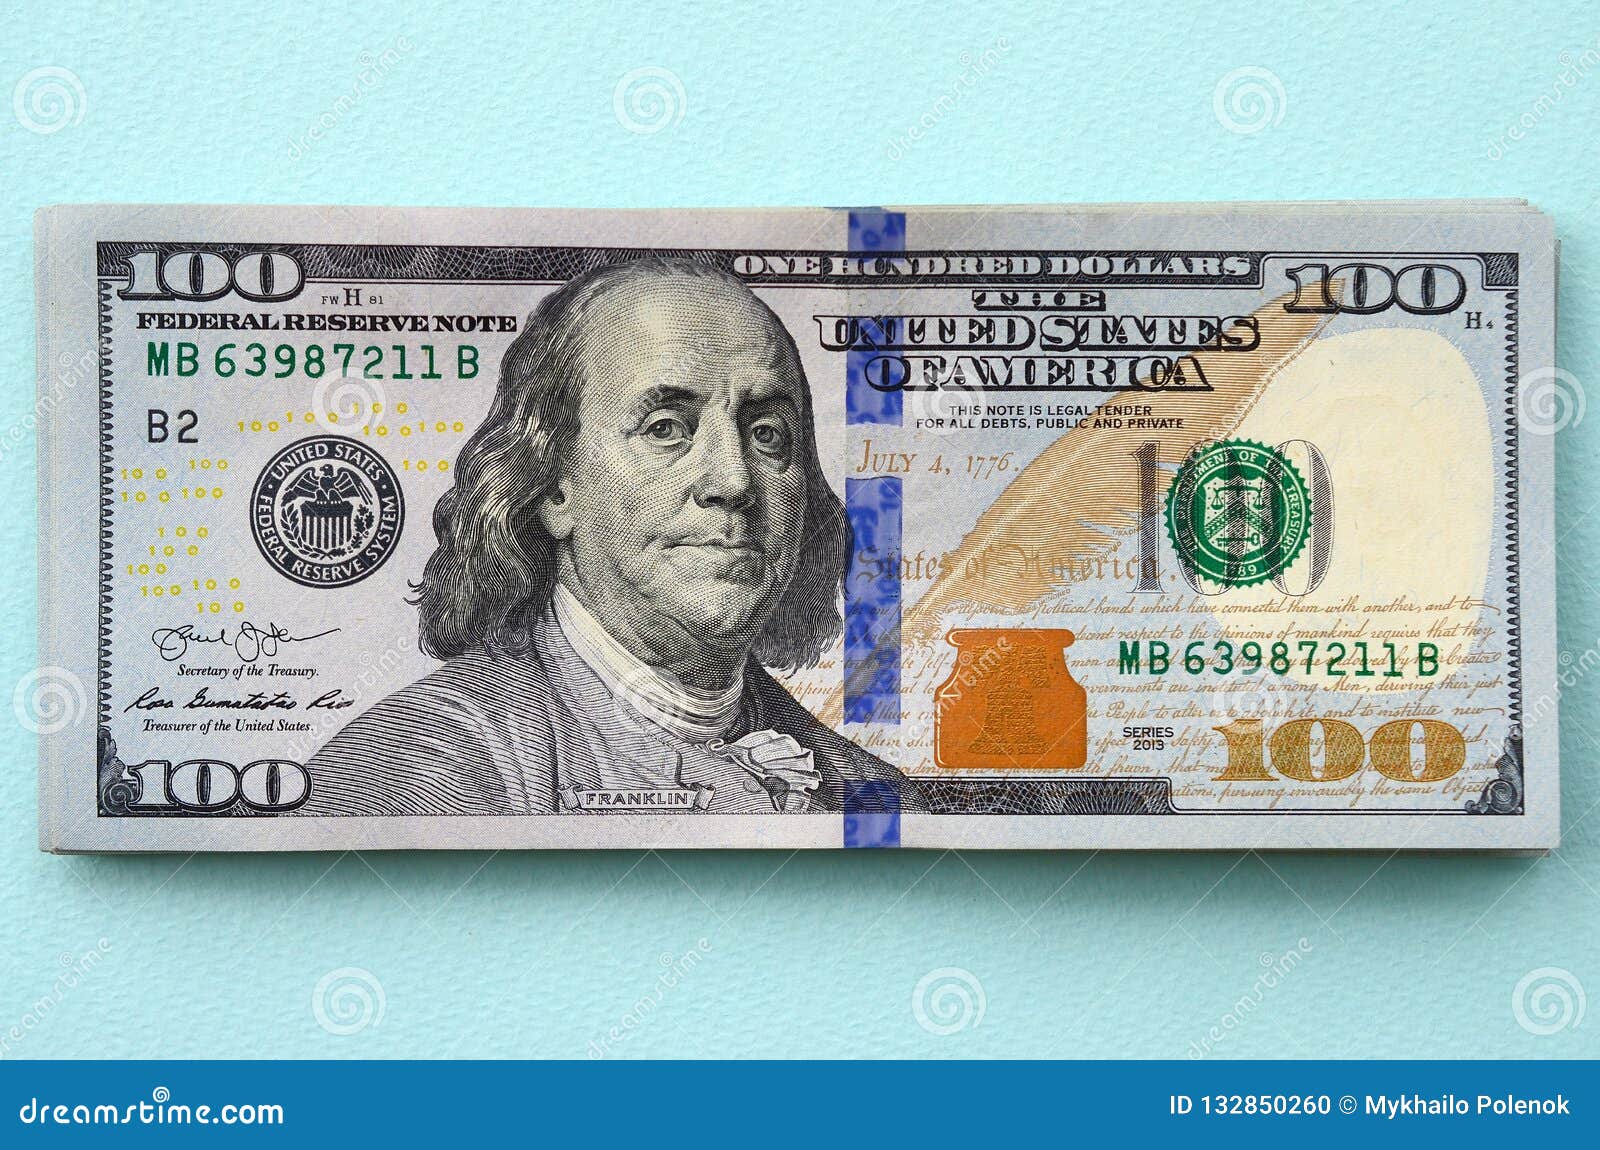 Как сейчас выглядит доллар сша 2021г